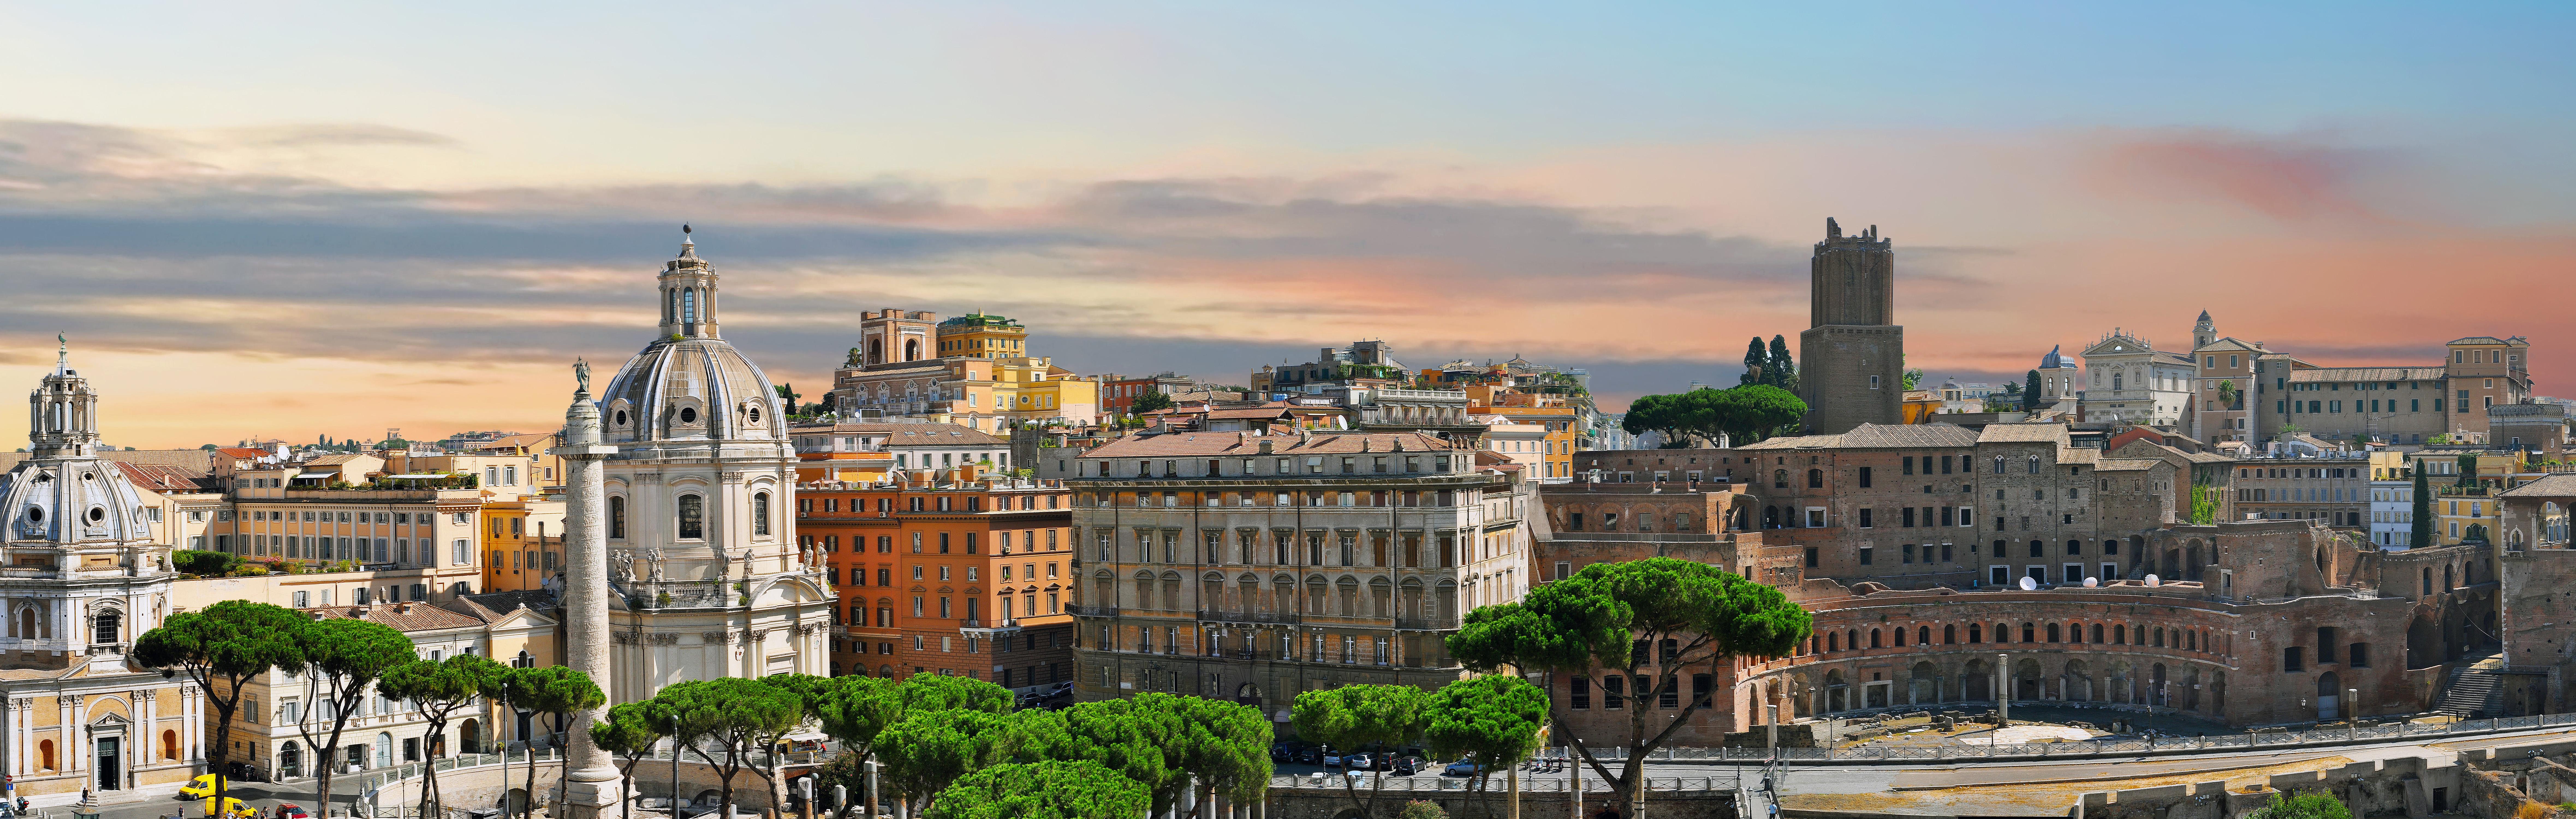 Das alte Forum, Roma, Italien  - 2012 -  Zeitgenössische Panoramik-Farbfotografie